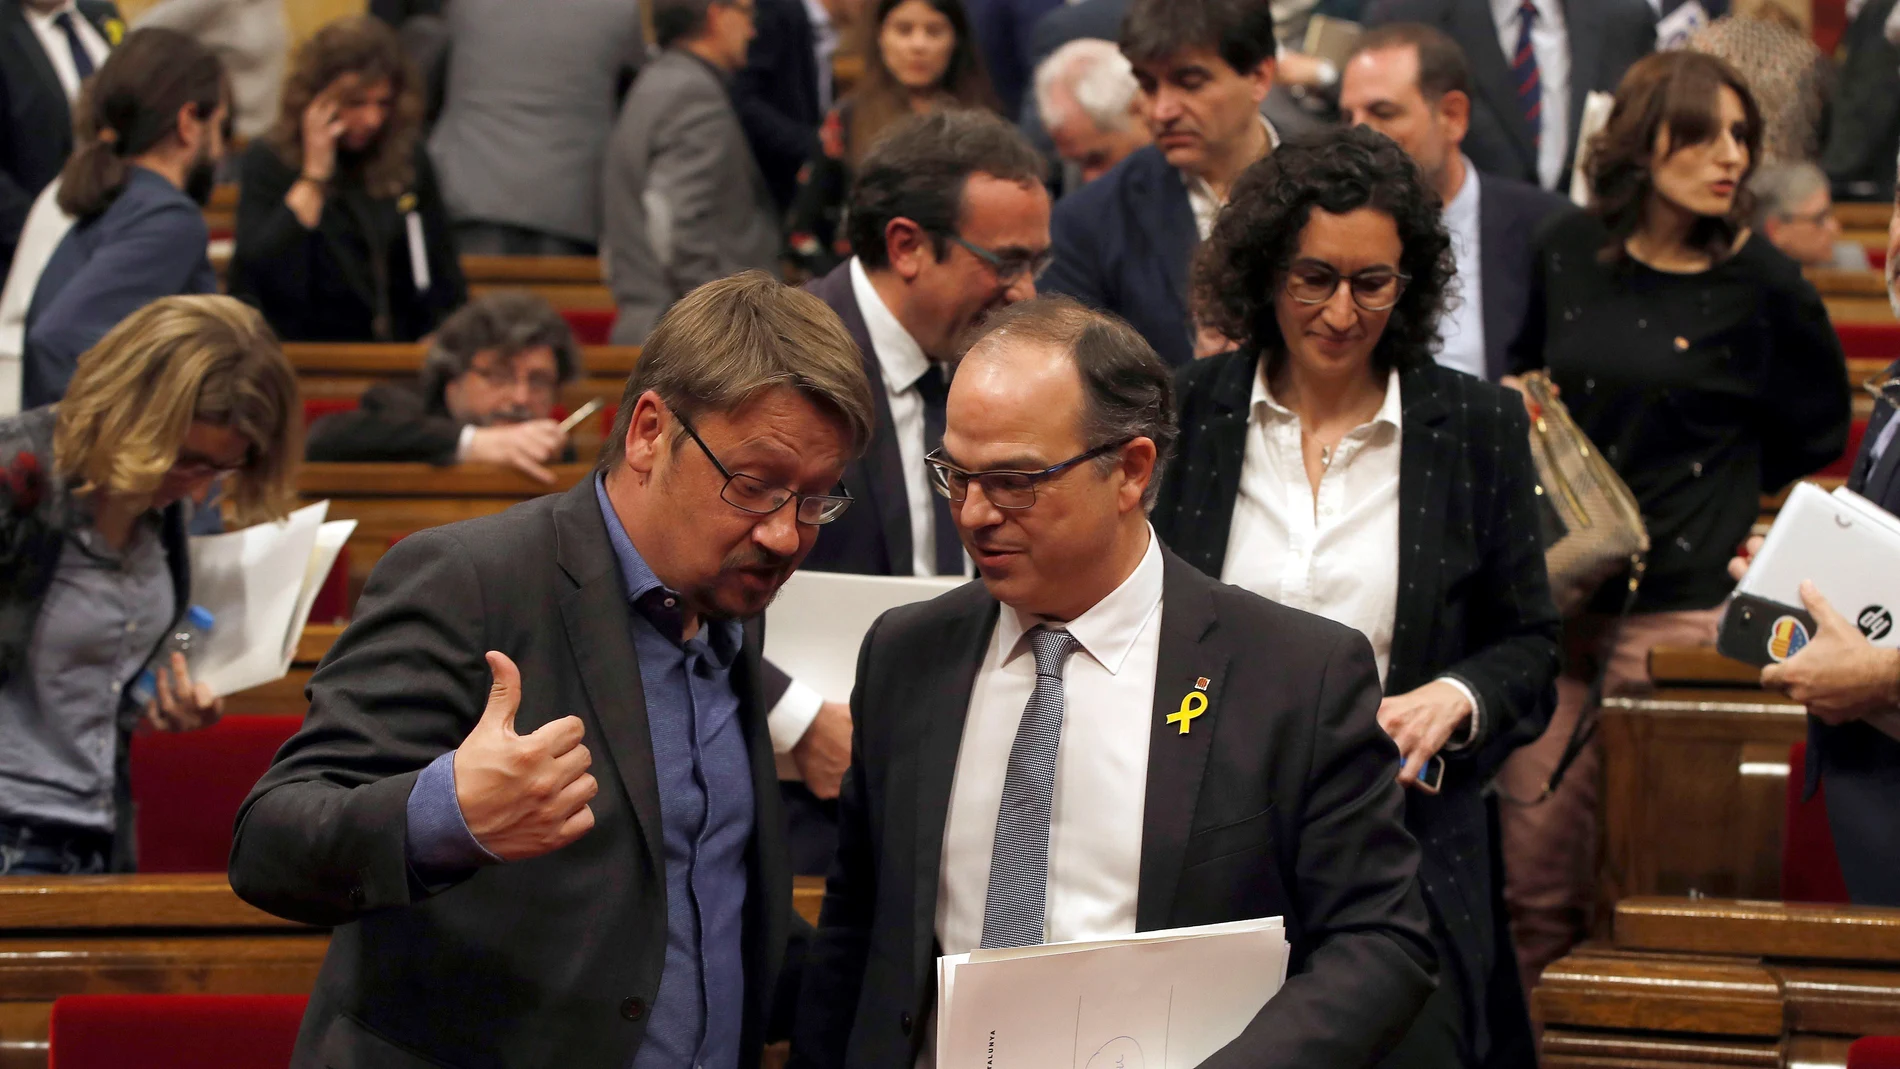 El candidato a la presidencia de la Generalitat, Jordi Turull, conversa con el lider de Catalunya en Comu, Xavier Doménech